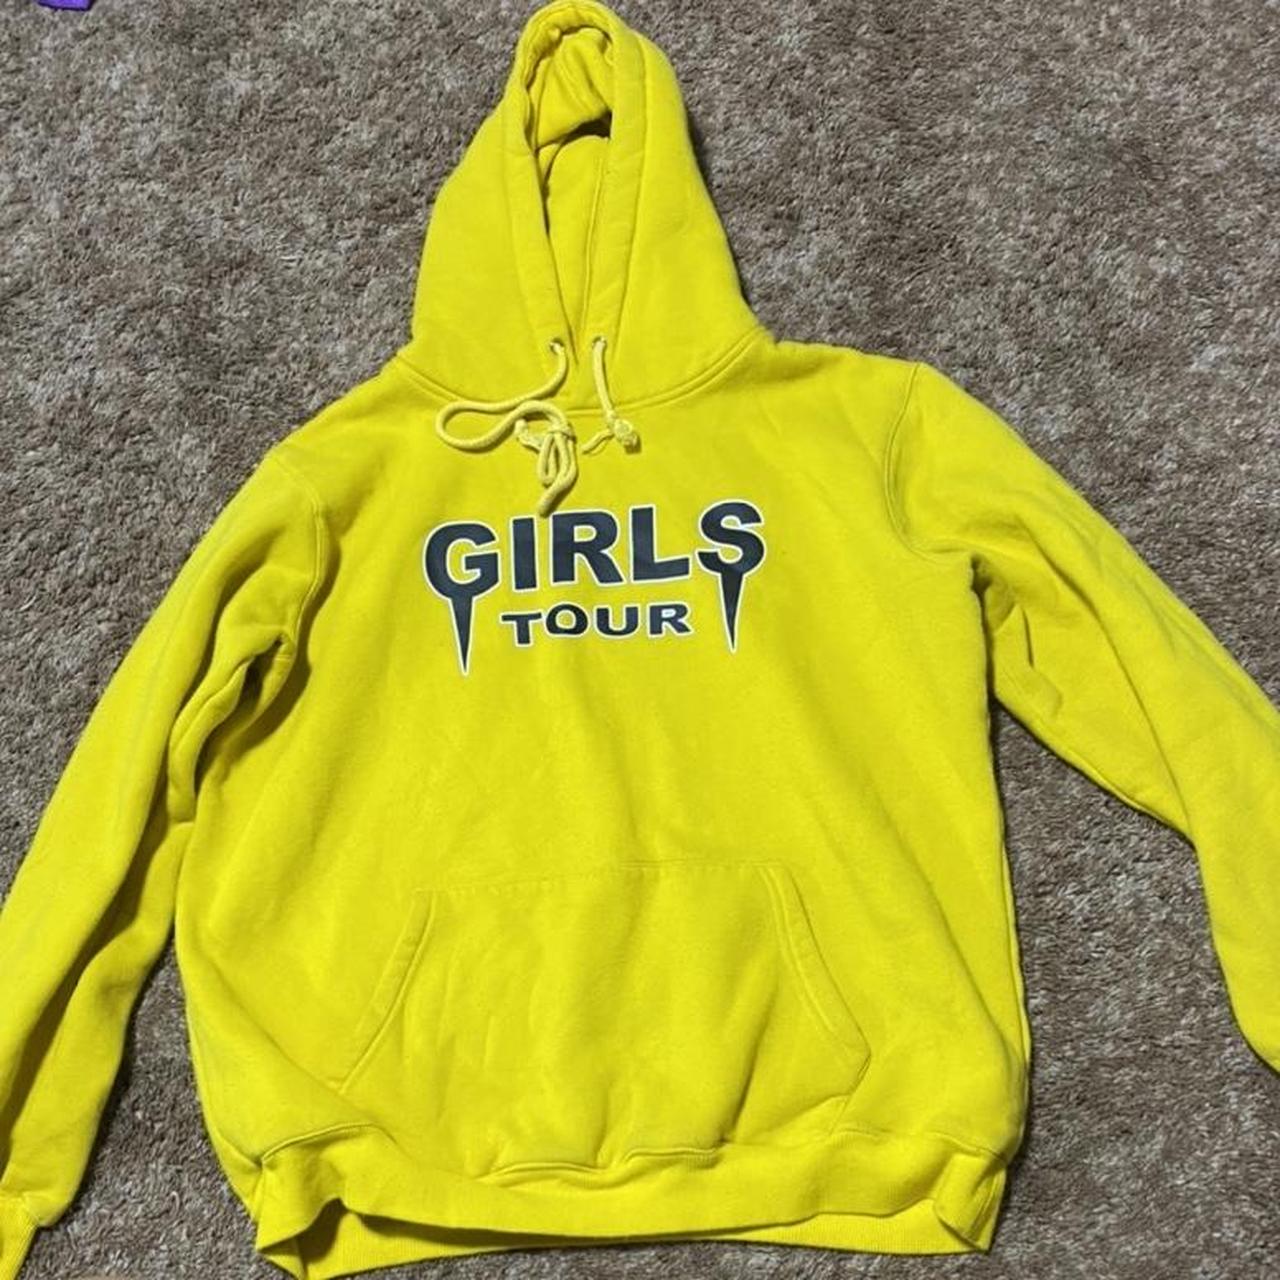 Girls Tour Women's Yellow and Black Hoodie